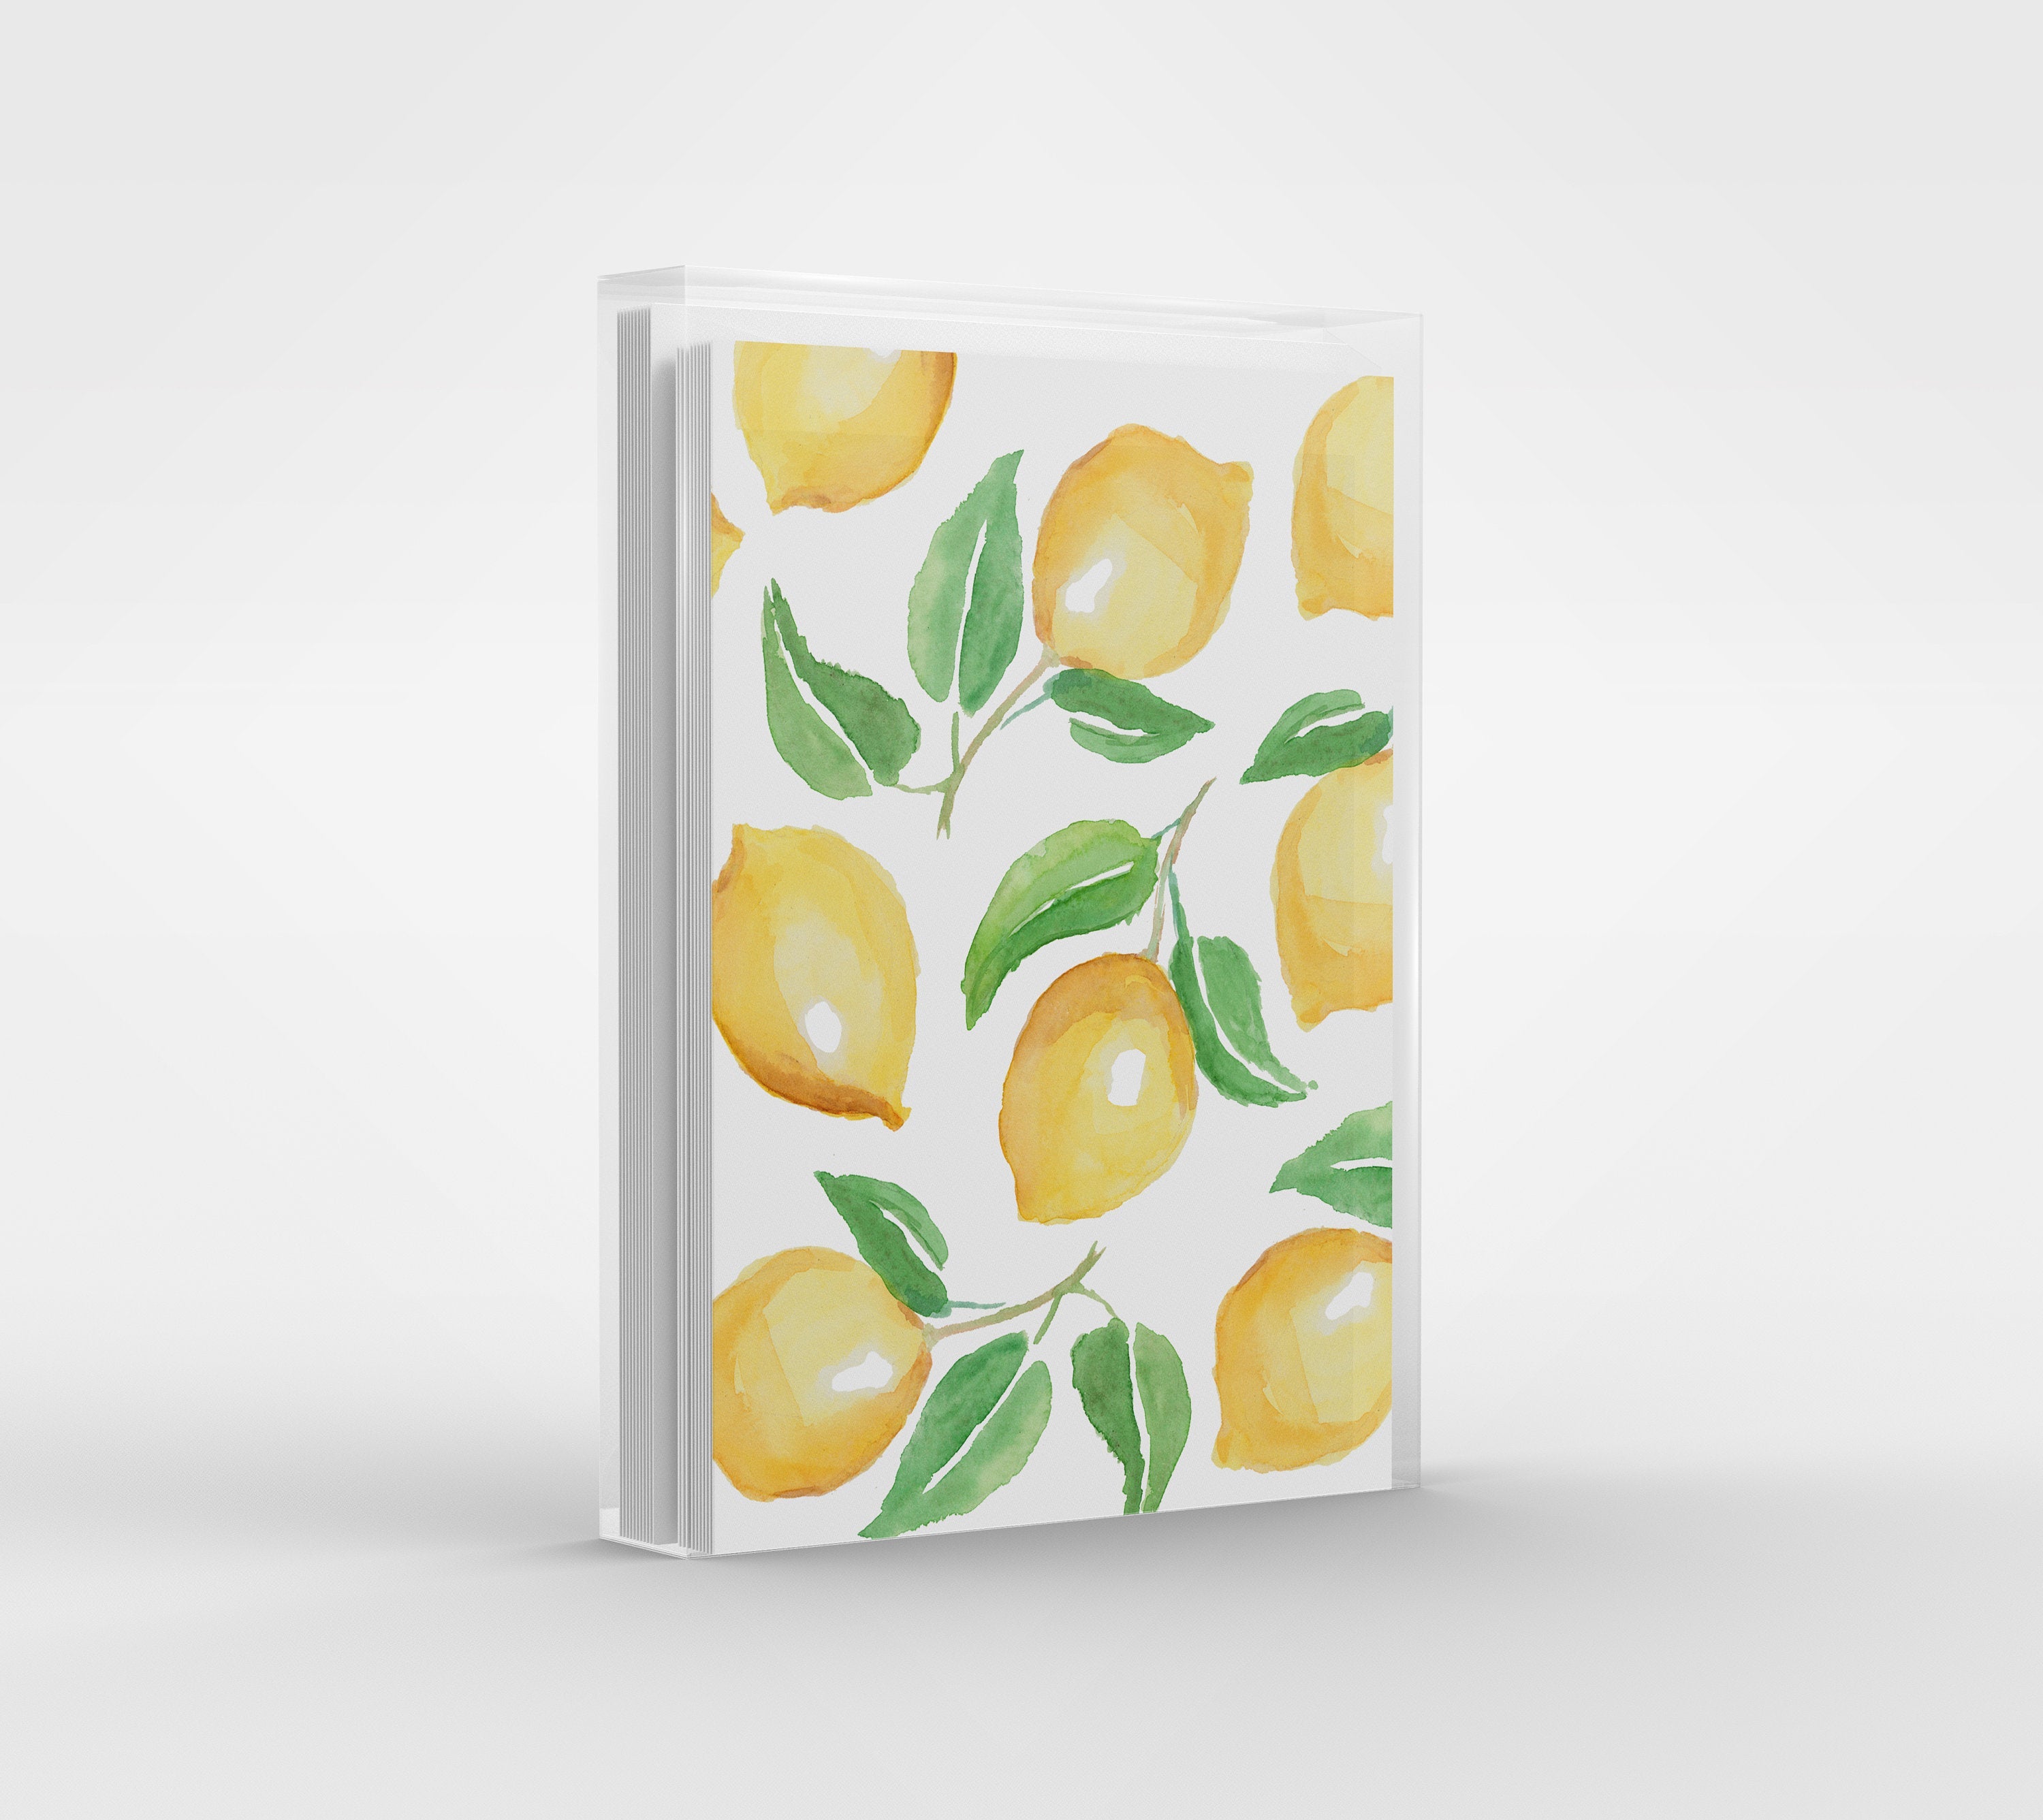 Lemon Pattern Greeting Cards - Set of 6